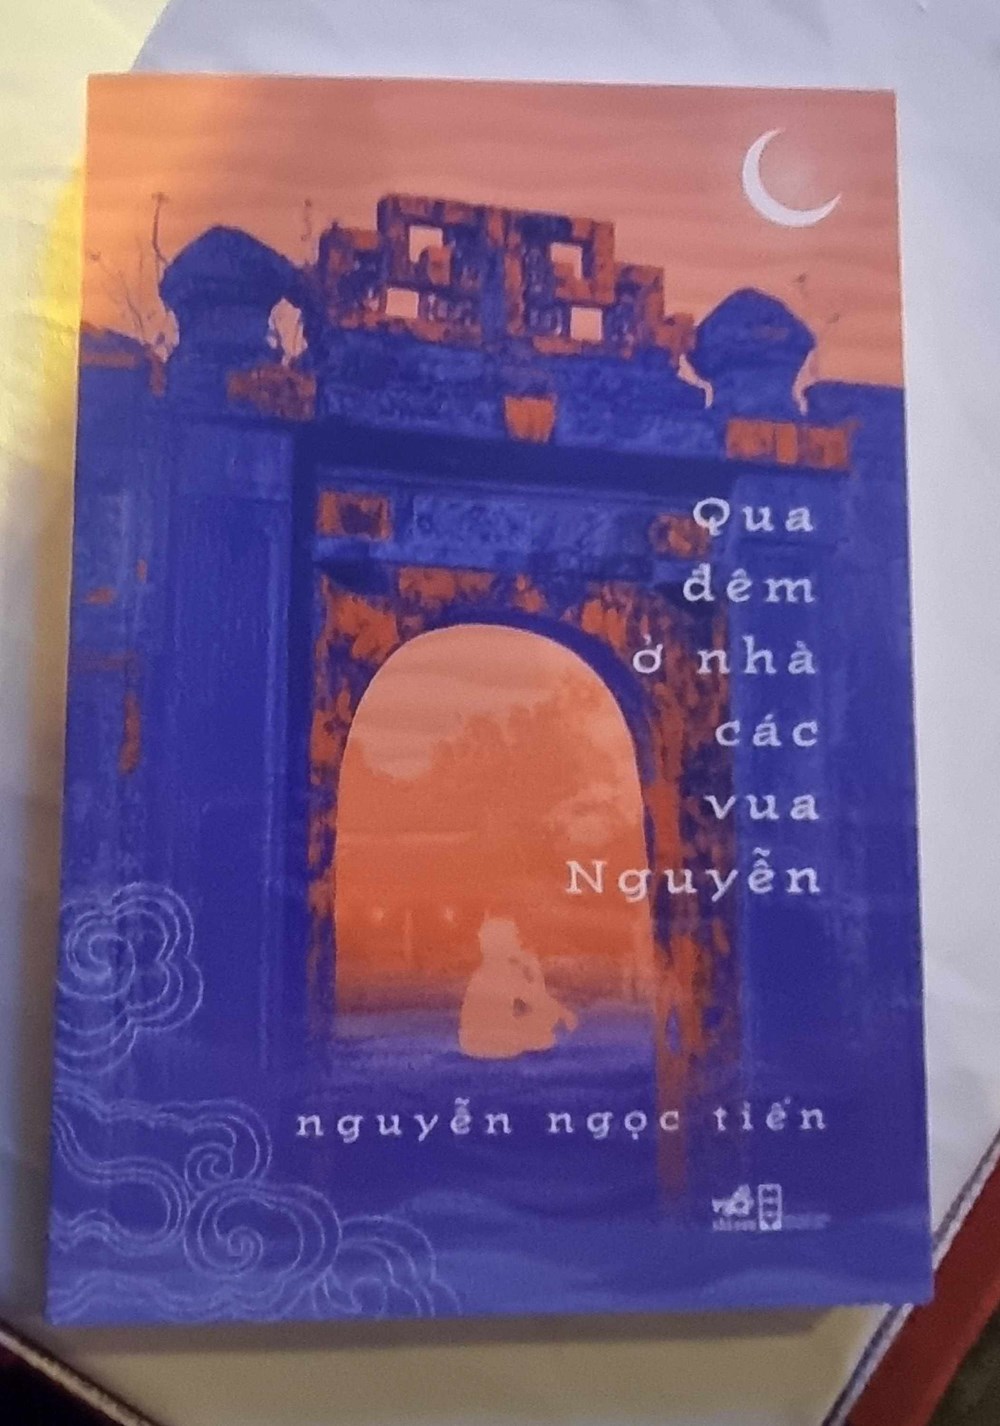 Giới thiệu hai tác phẩm về Hà Nội của nhà văn Nguyễn Ngọc Tiến - ảnh 2